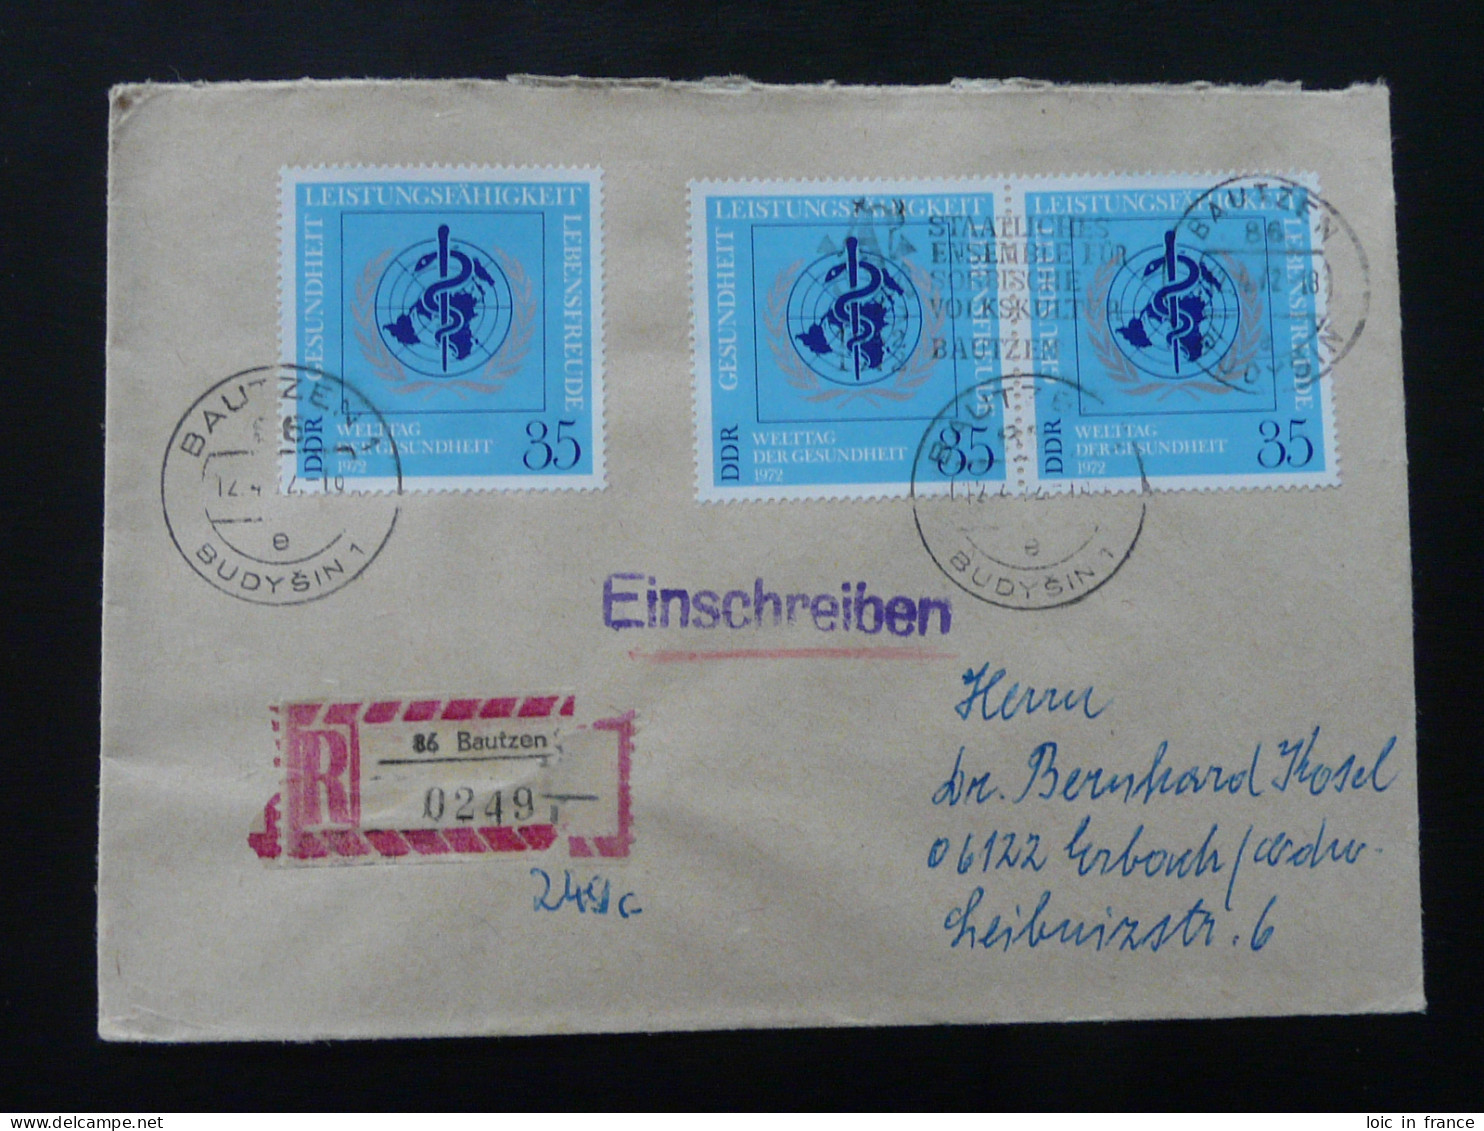 OMS WHO Lettre Recommandée Registered Cover Einschreiben Brief Bautzen DDR Ref 179 - WGO